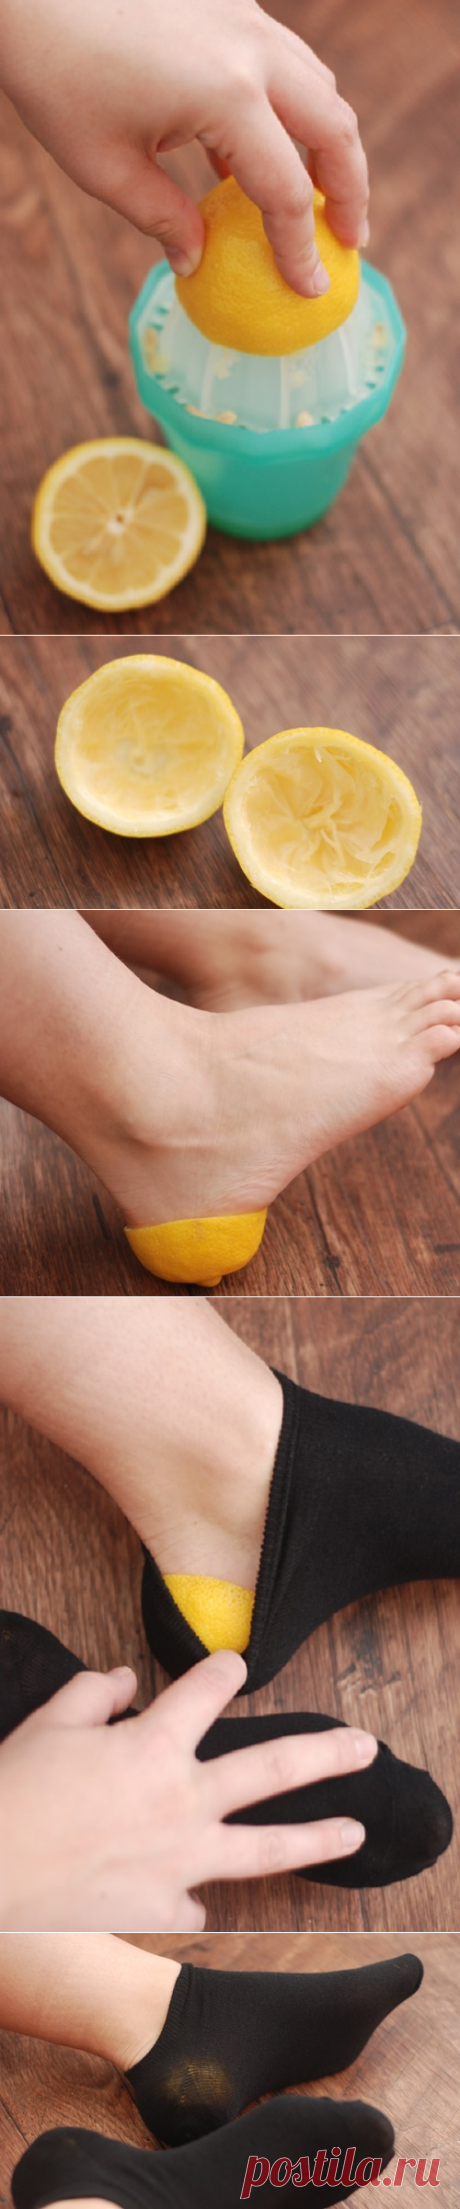 Она засунула лимонную корочку в носок… Когда я узнала, зачем ей это, была в восторге!